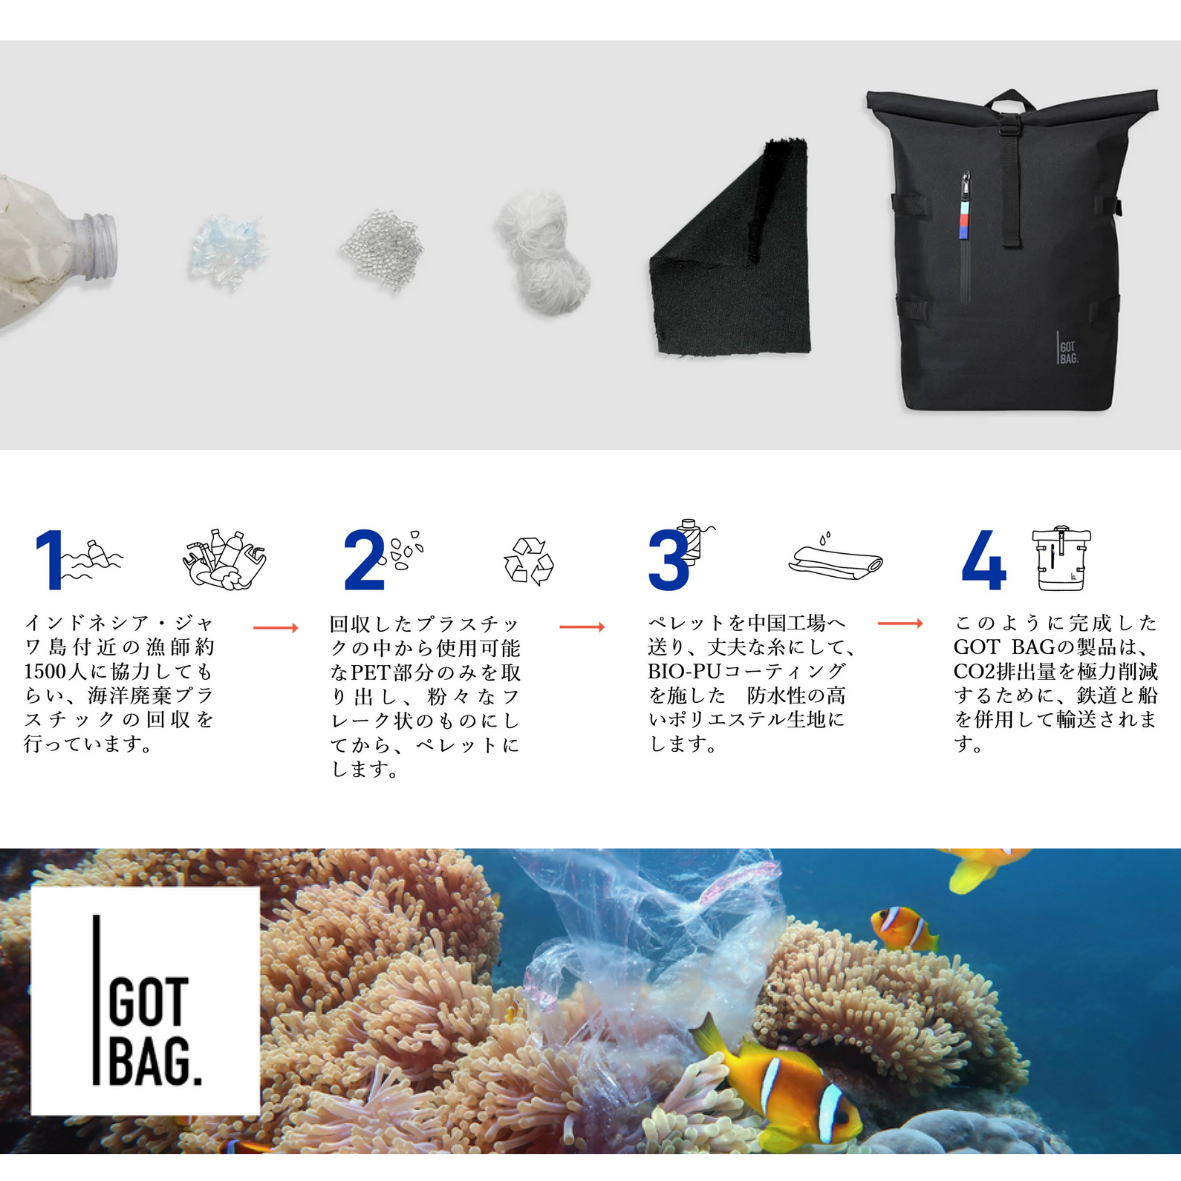 【GOTBG】”海洋プラスティックからできた”　ロールトップバックライト